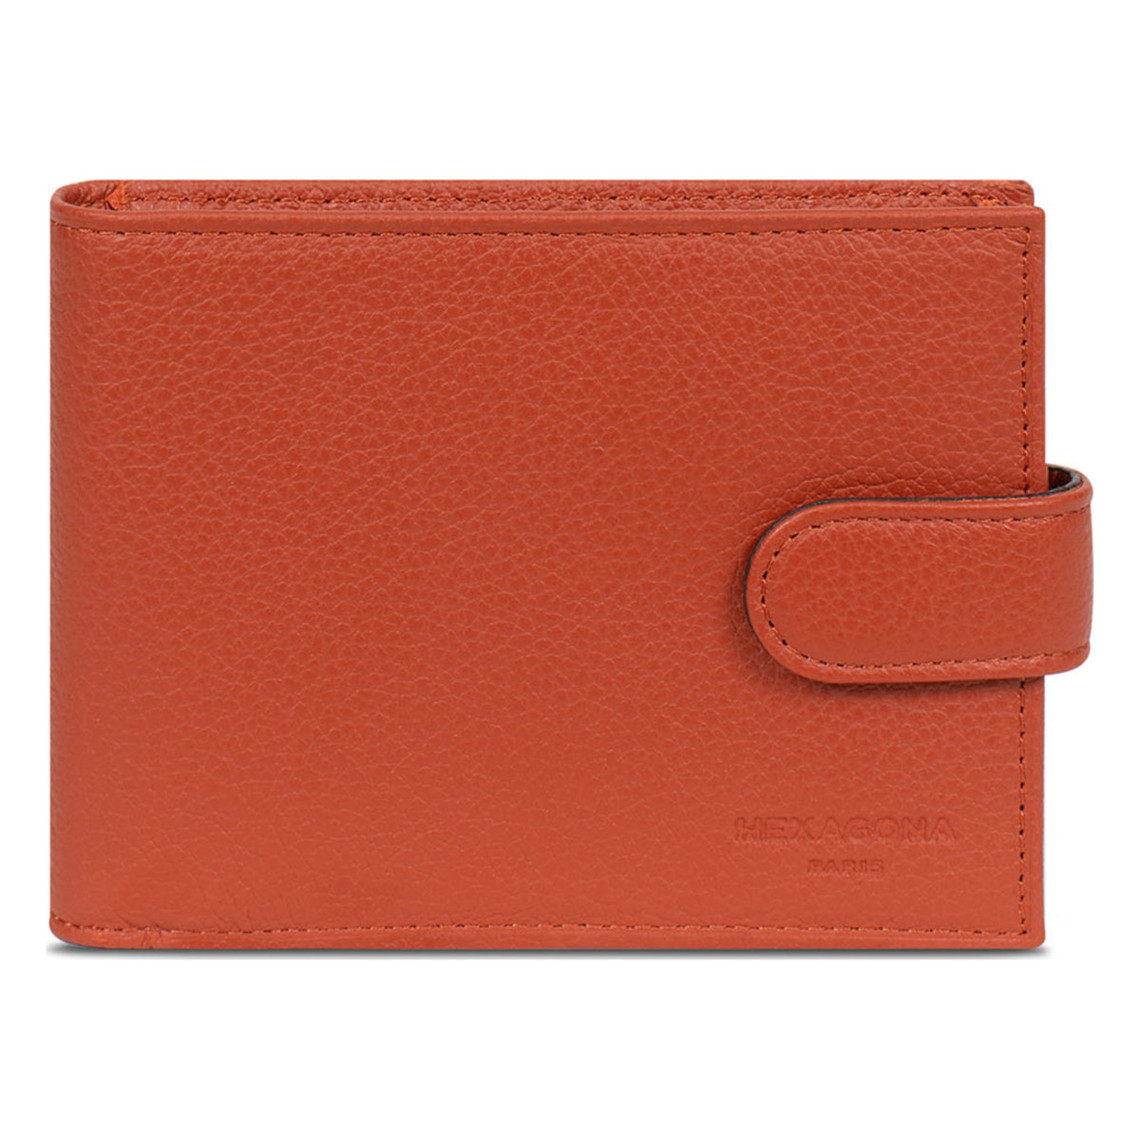 portefeuille italien - 2 volets - cuir de vachette - orange - confort